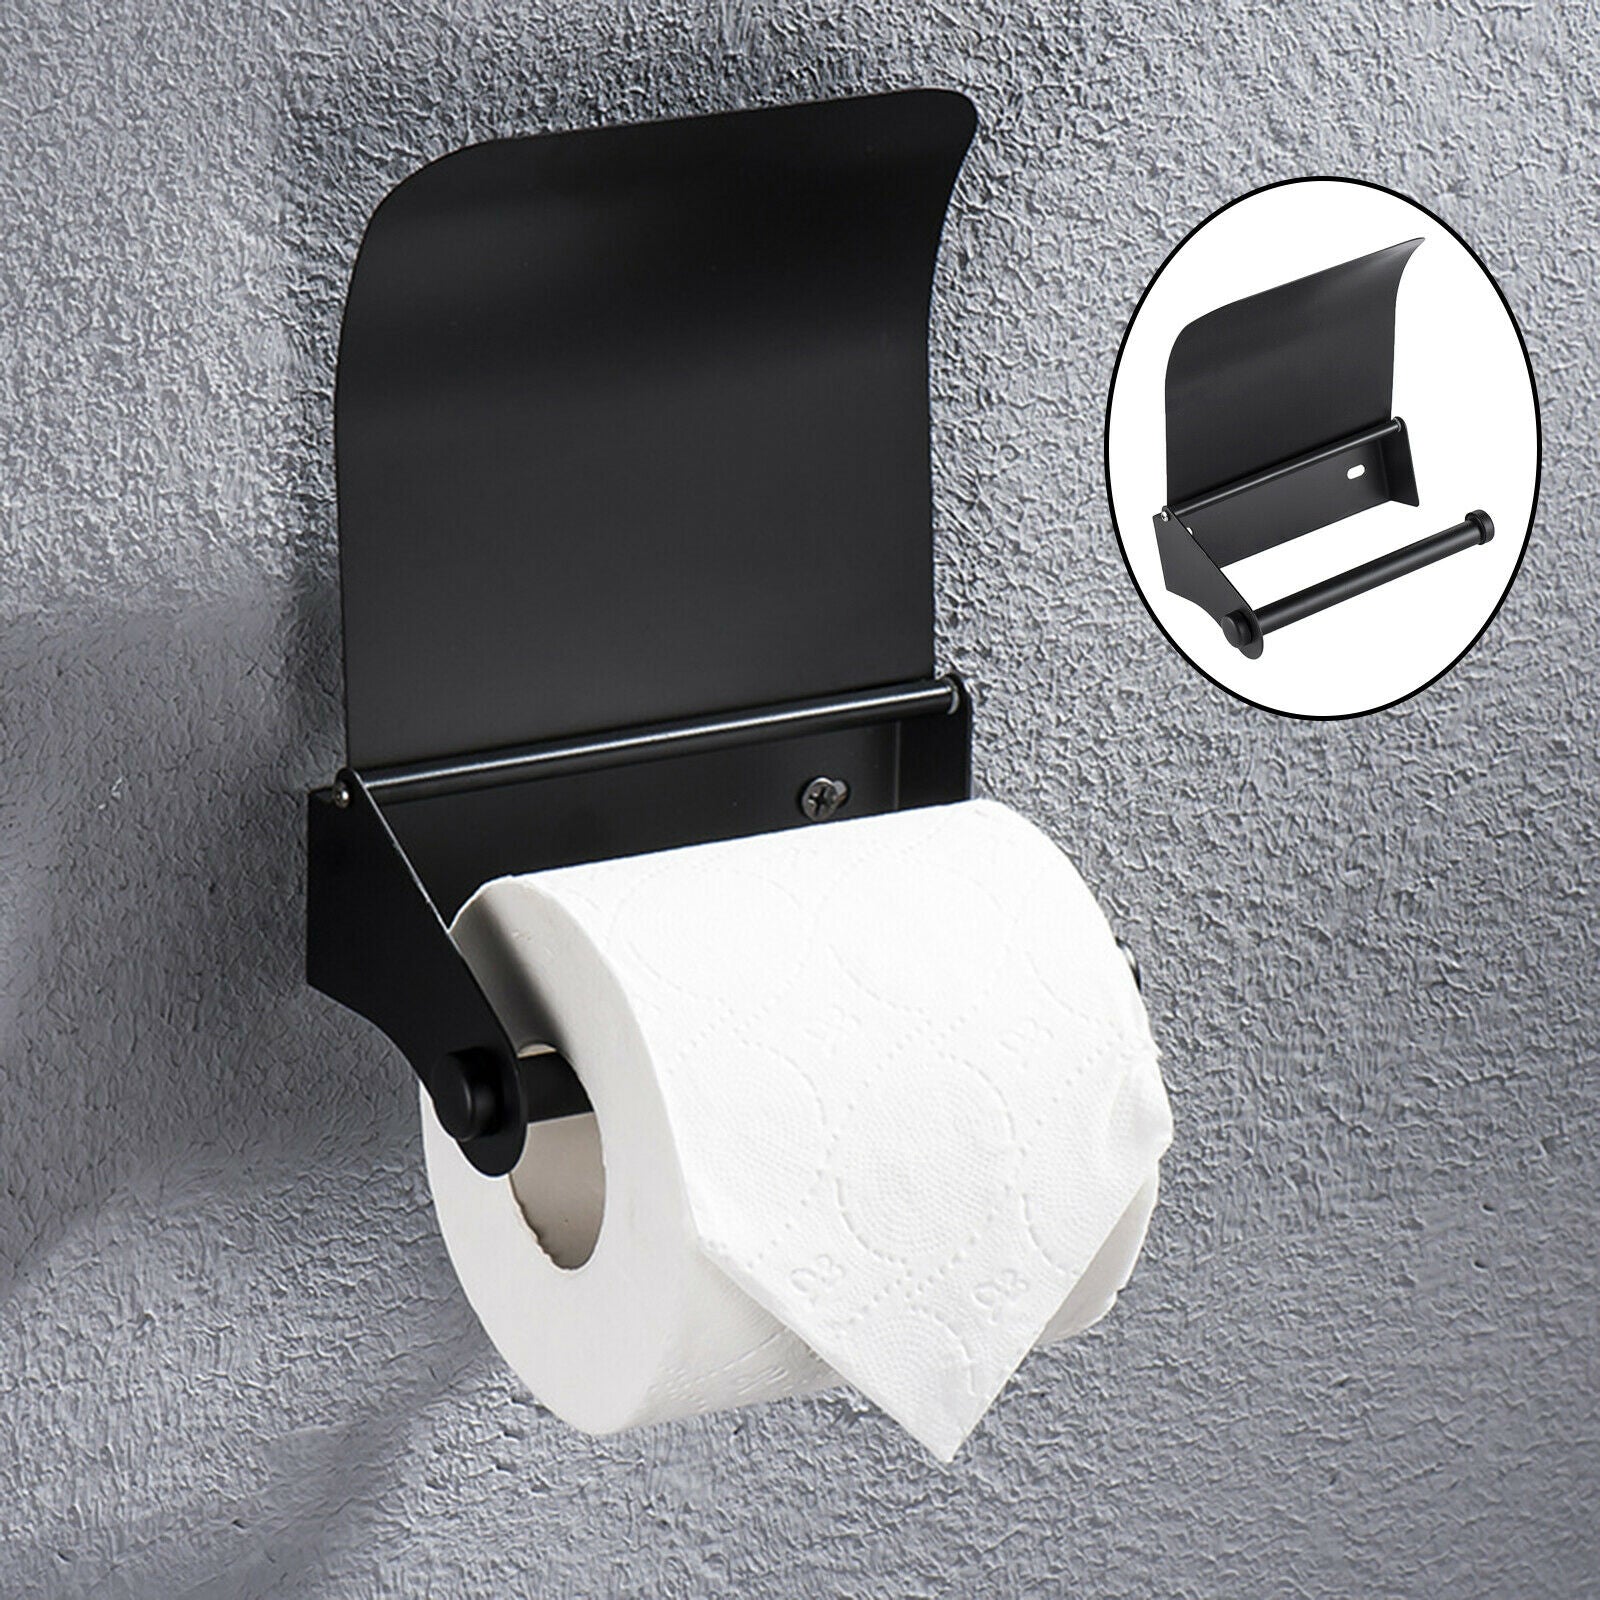 Stainless Black Toilet Roll Paper Holder Tissue Shelf Single Roll